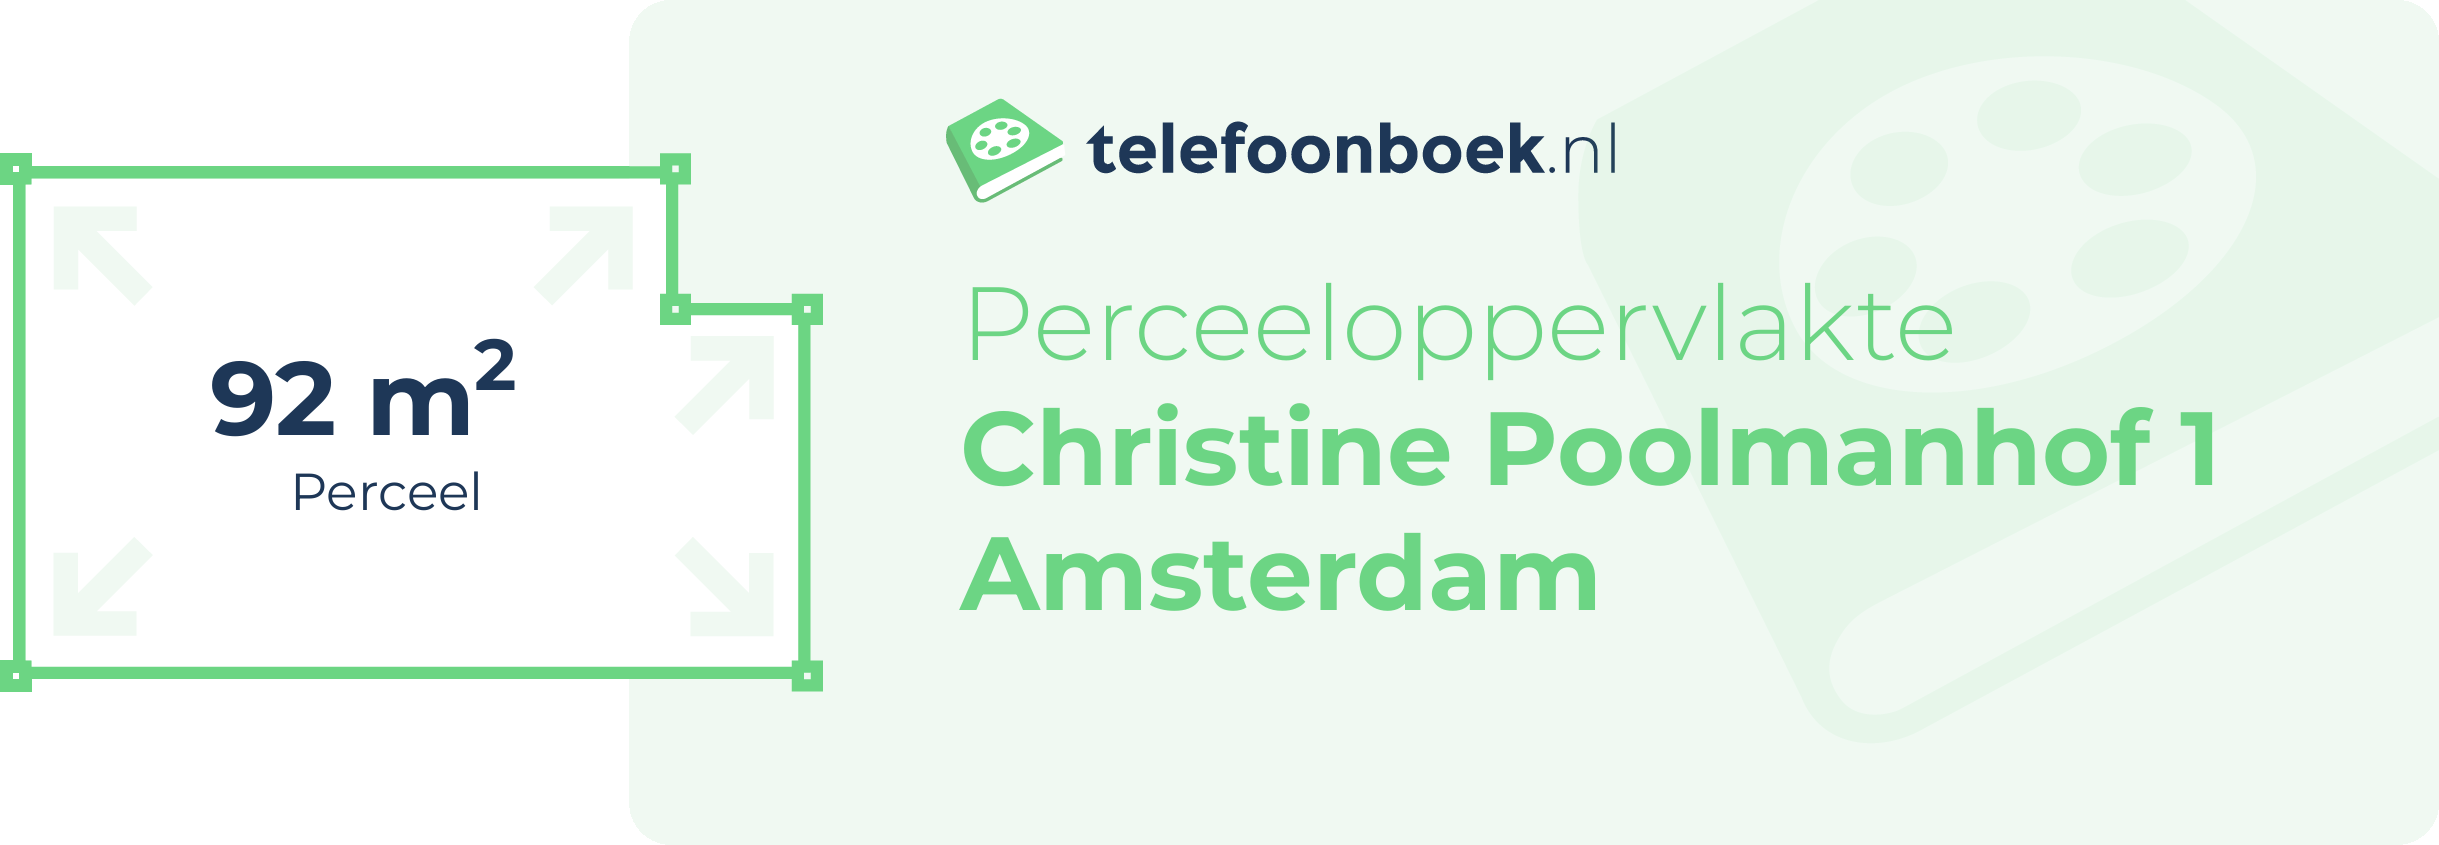 Perceeloppervlakte Christine Poolmanhof 1 Amsterdam